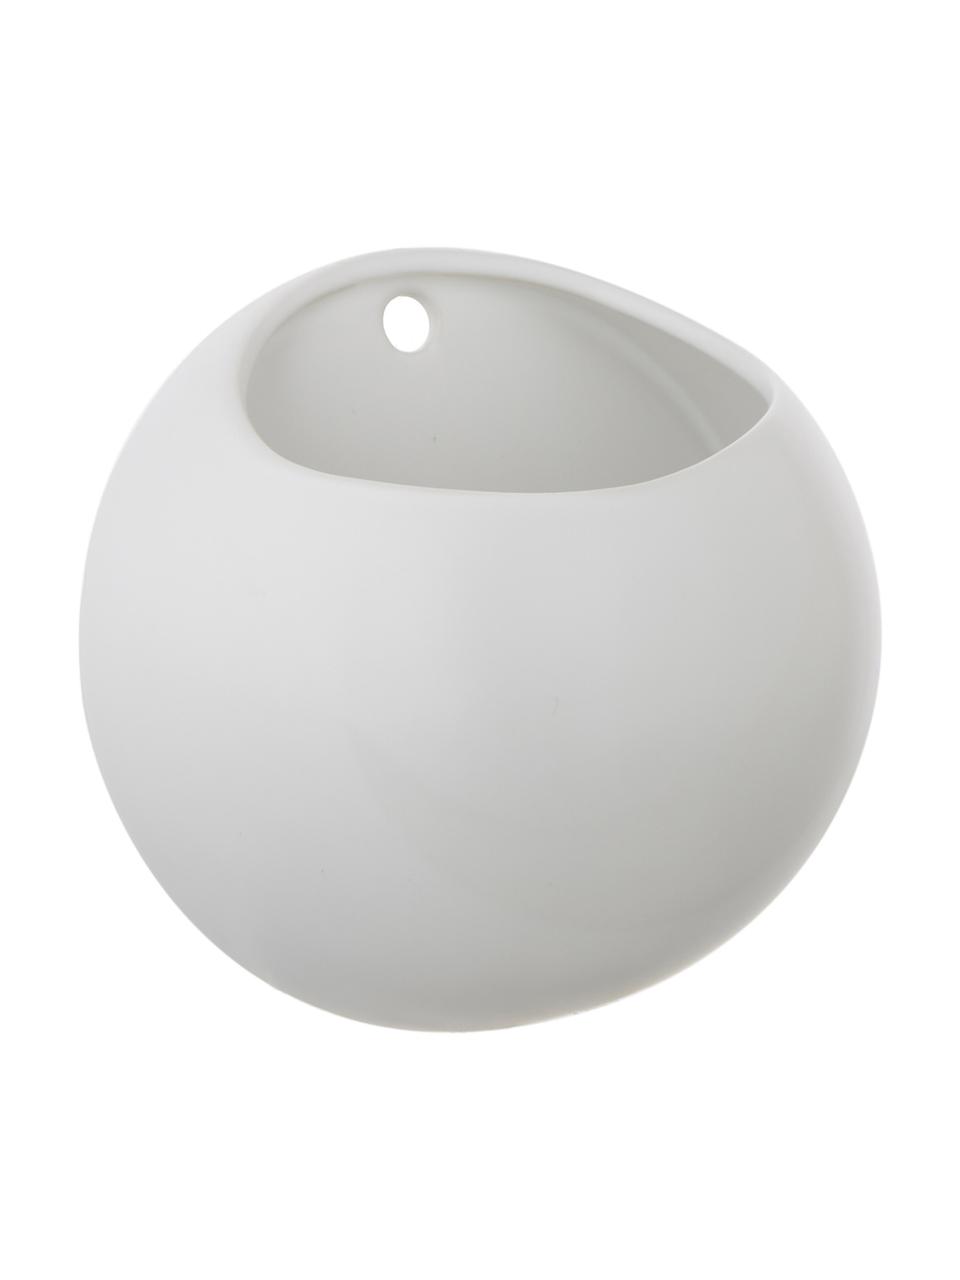 Ścienna osłonka na doniczkę z ceramiki Globe, Ceramika, Biały, Ø 15 x W 15 cm